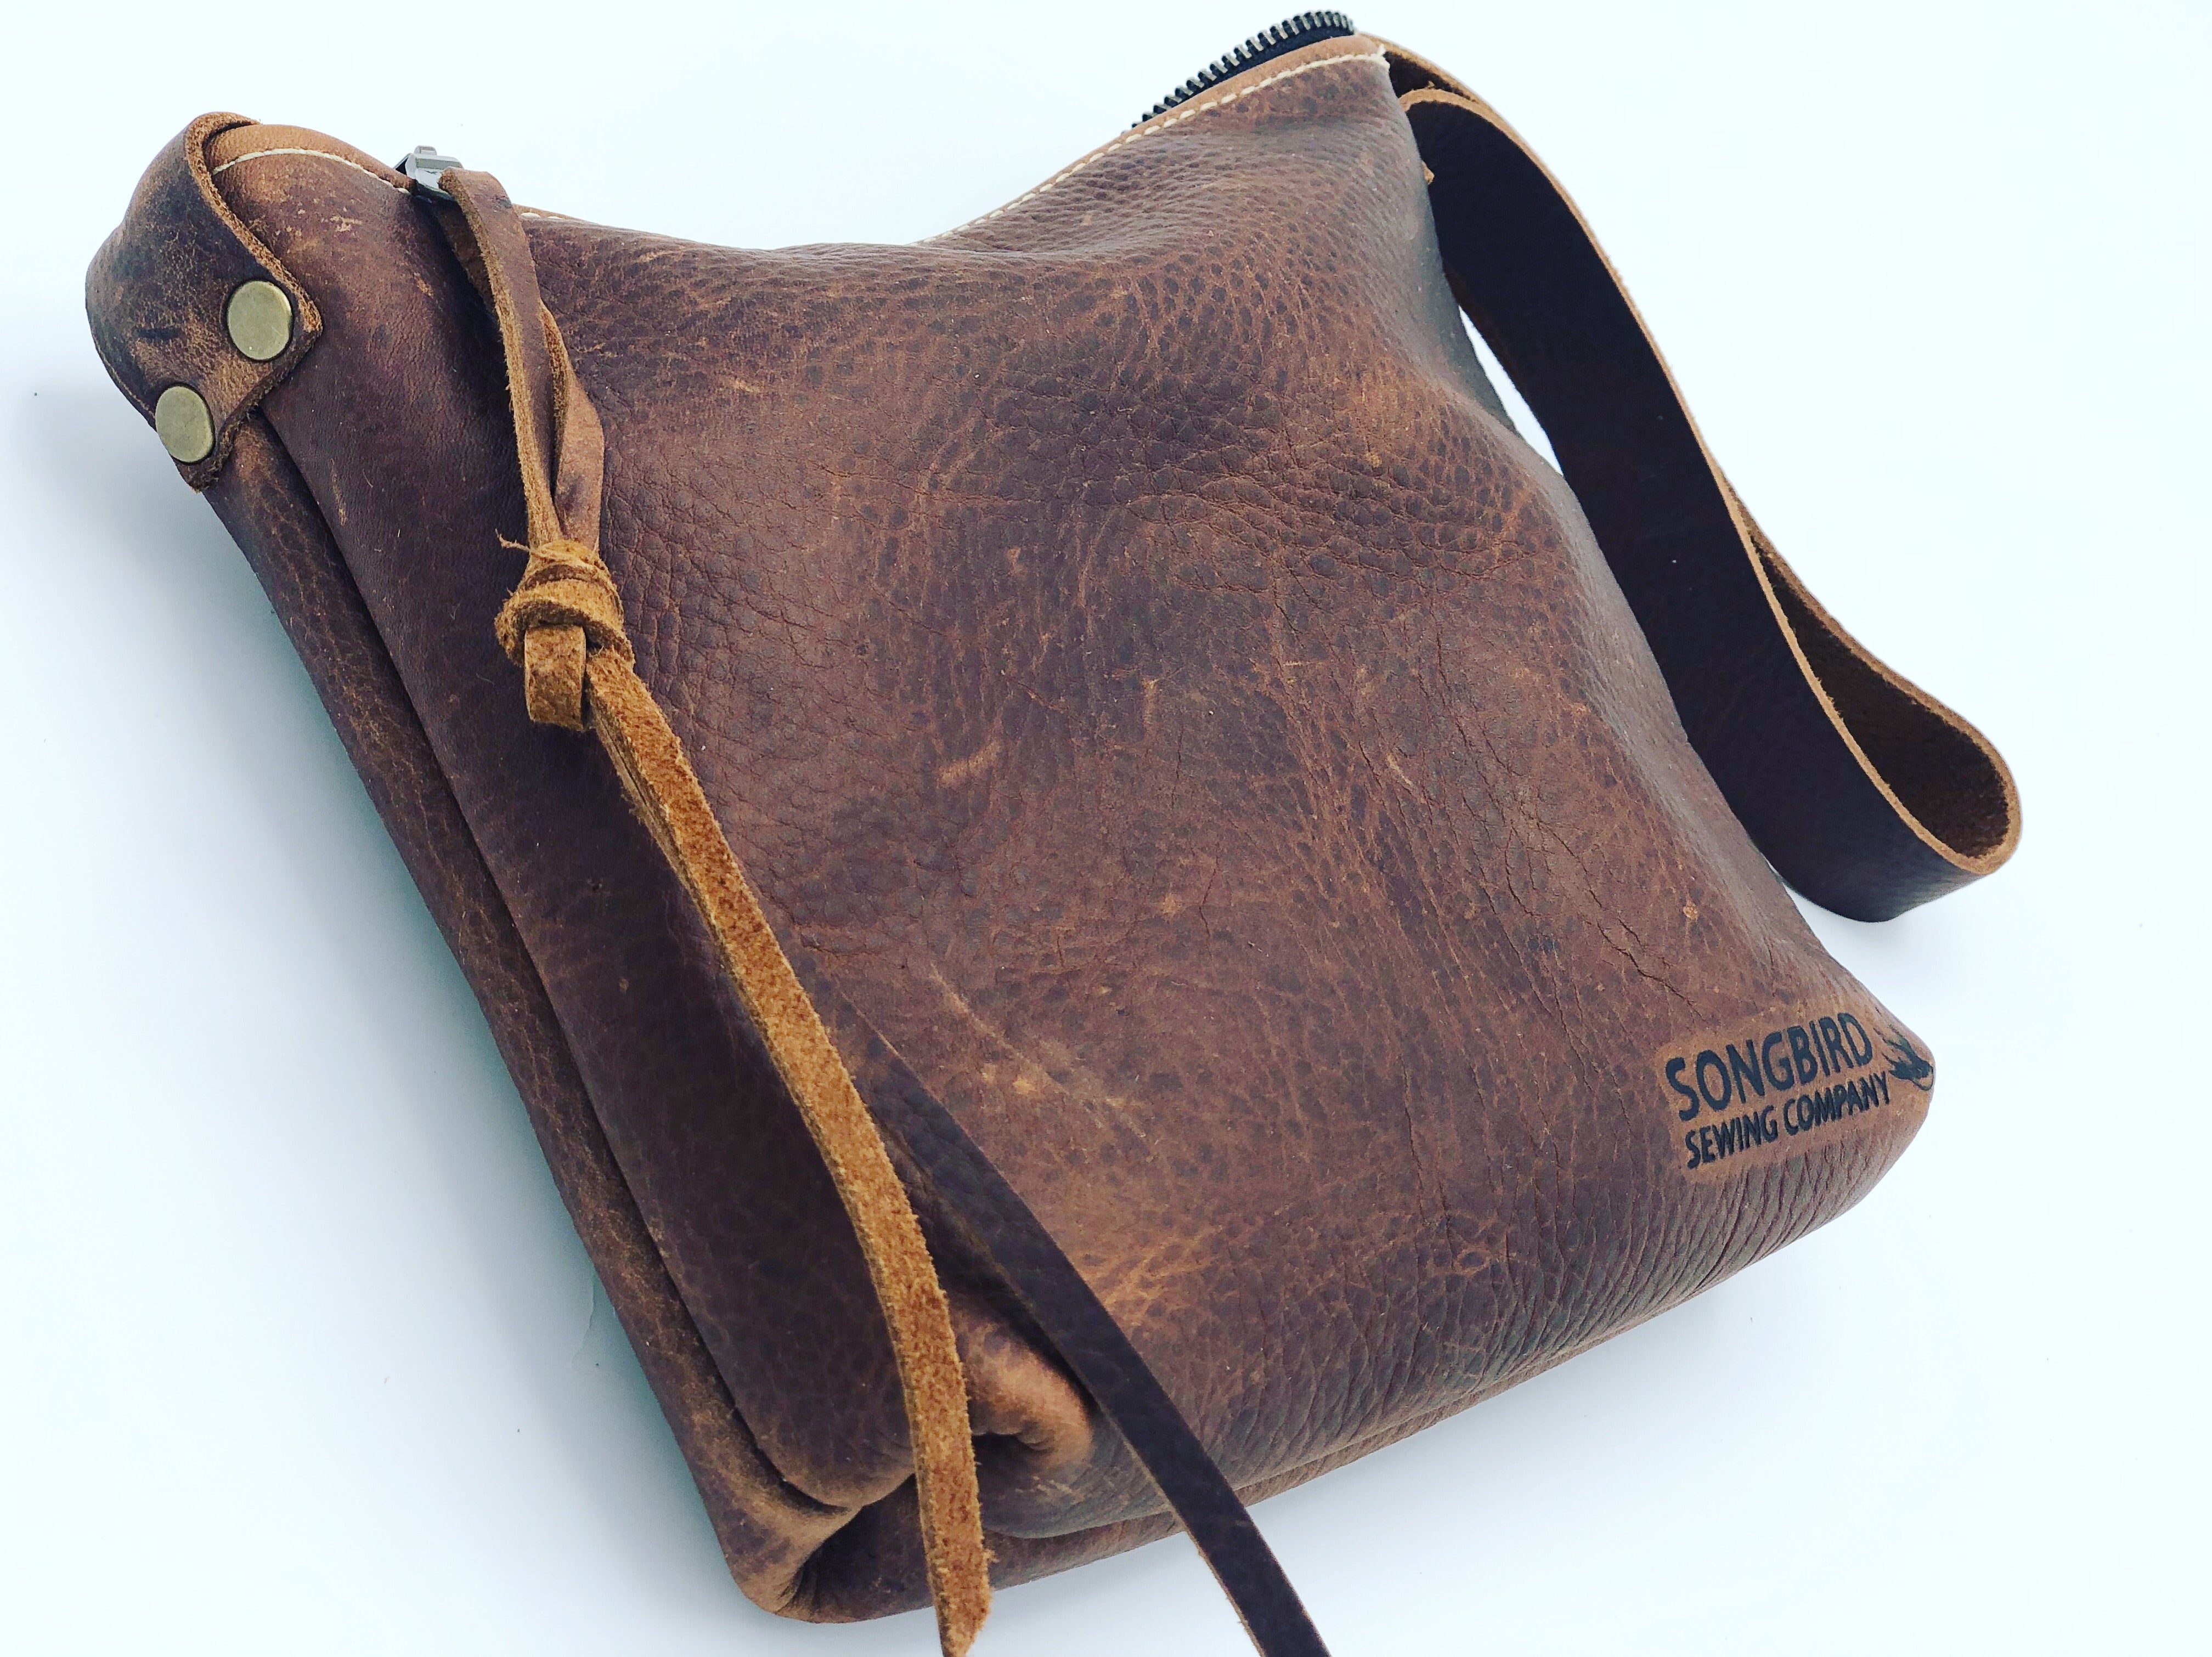 Leather Birdie Bag